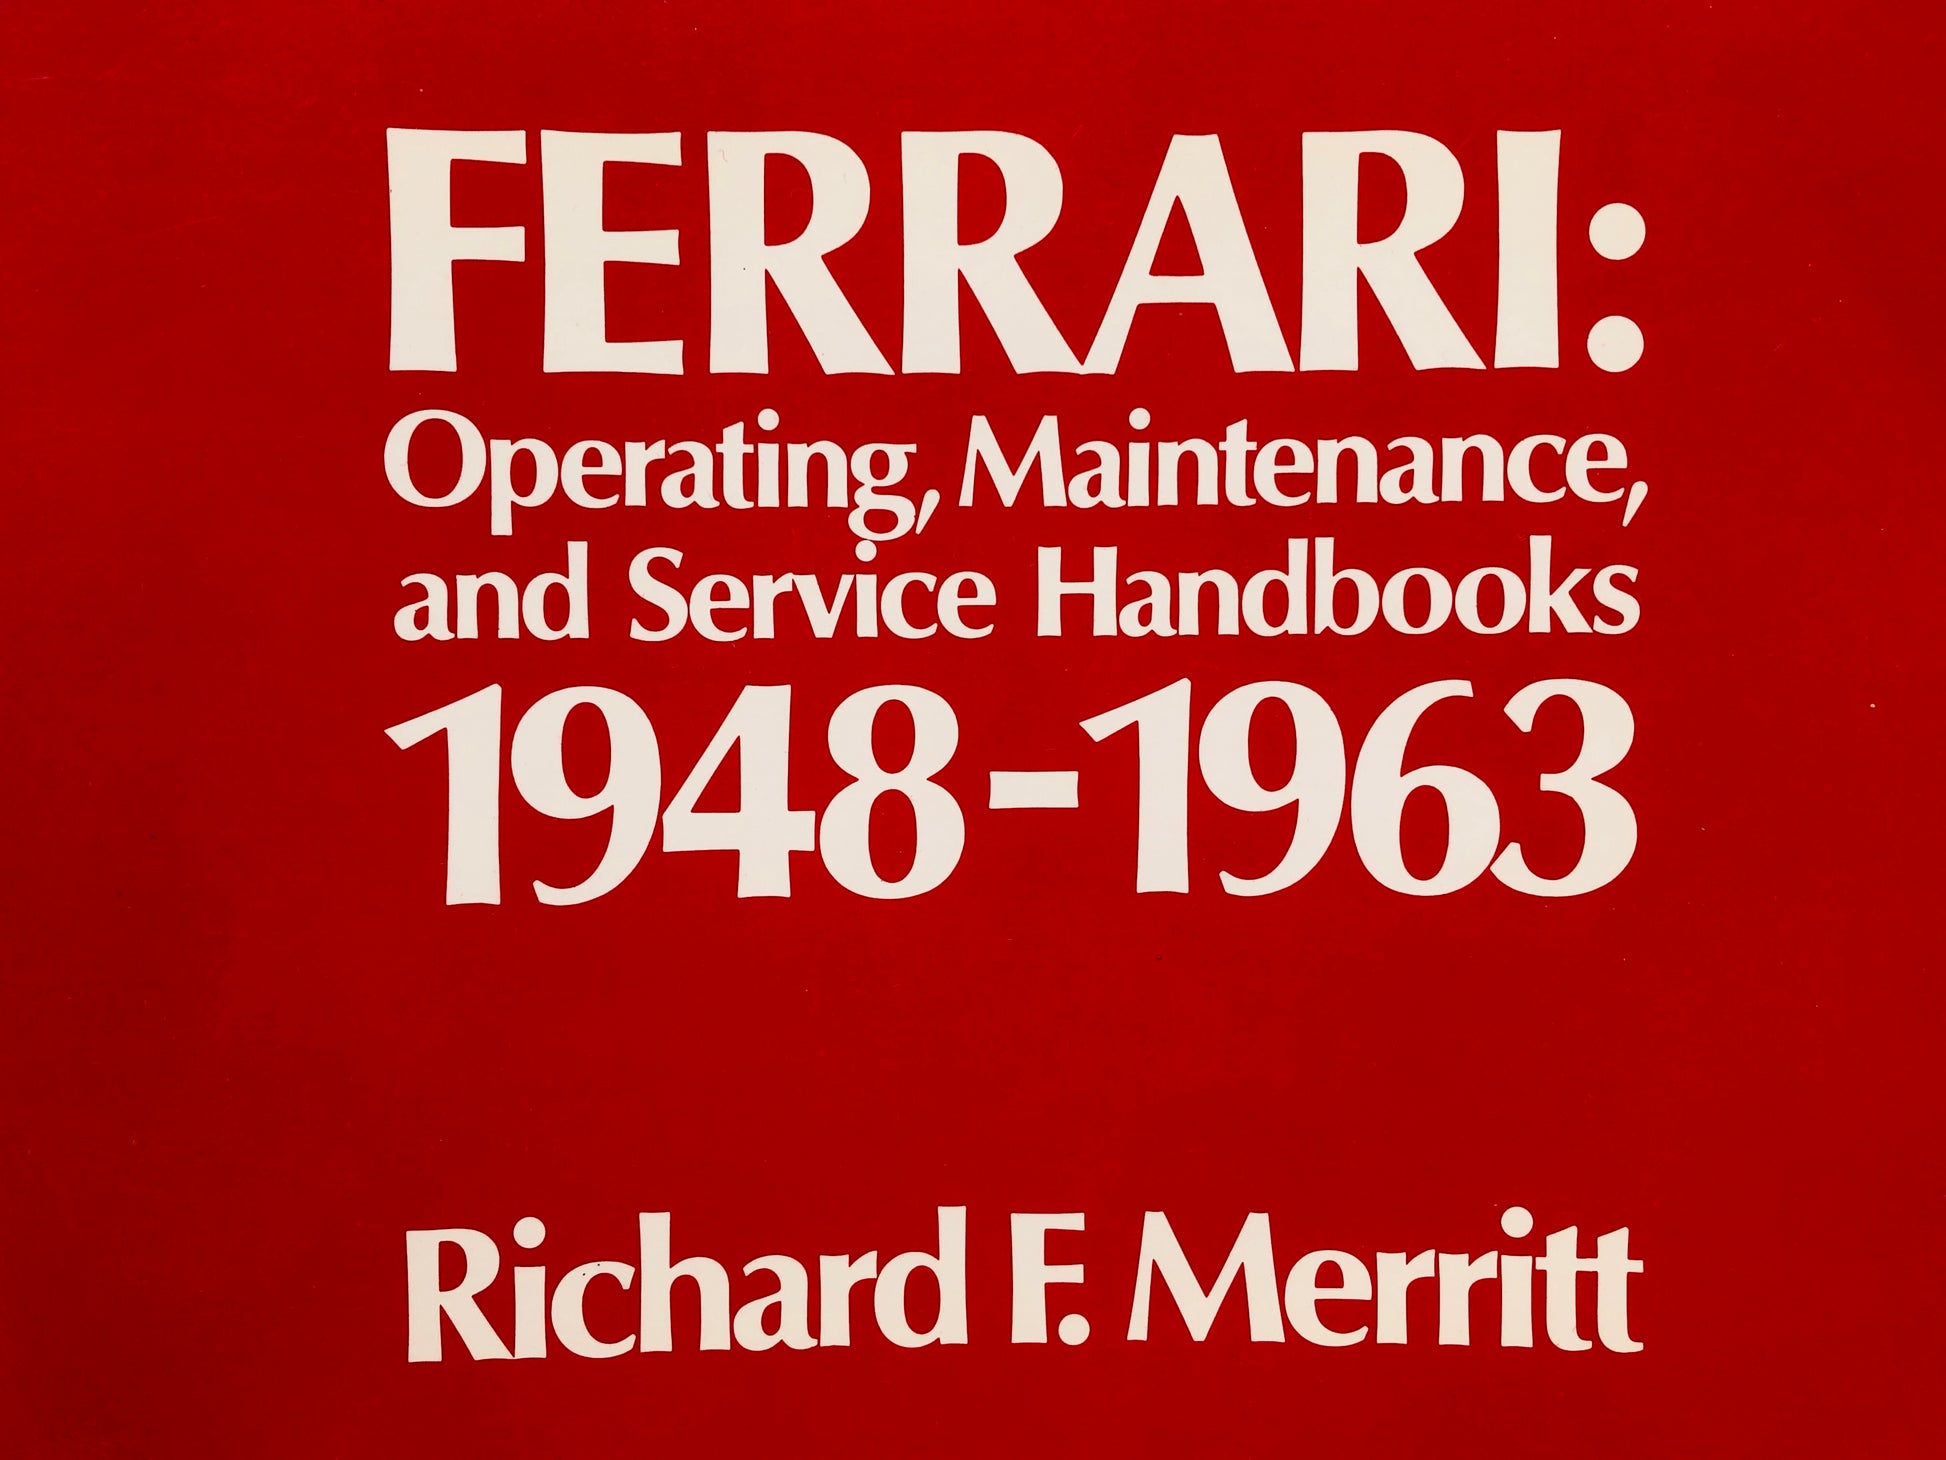 Ferrari, Raccolta di Tutti i Manuali Tecnici dal 1948 al 1963, ISBN 0914822039 - Raggi's Collectibles' Automotive Art